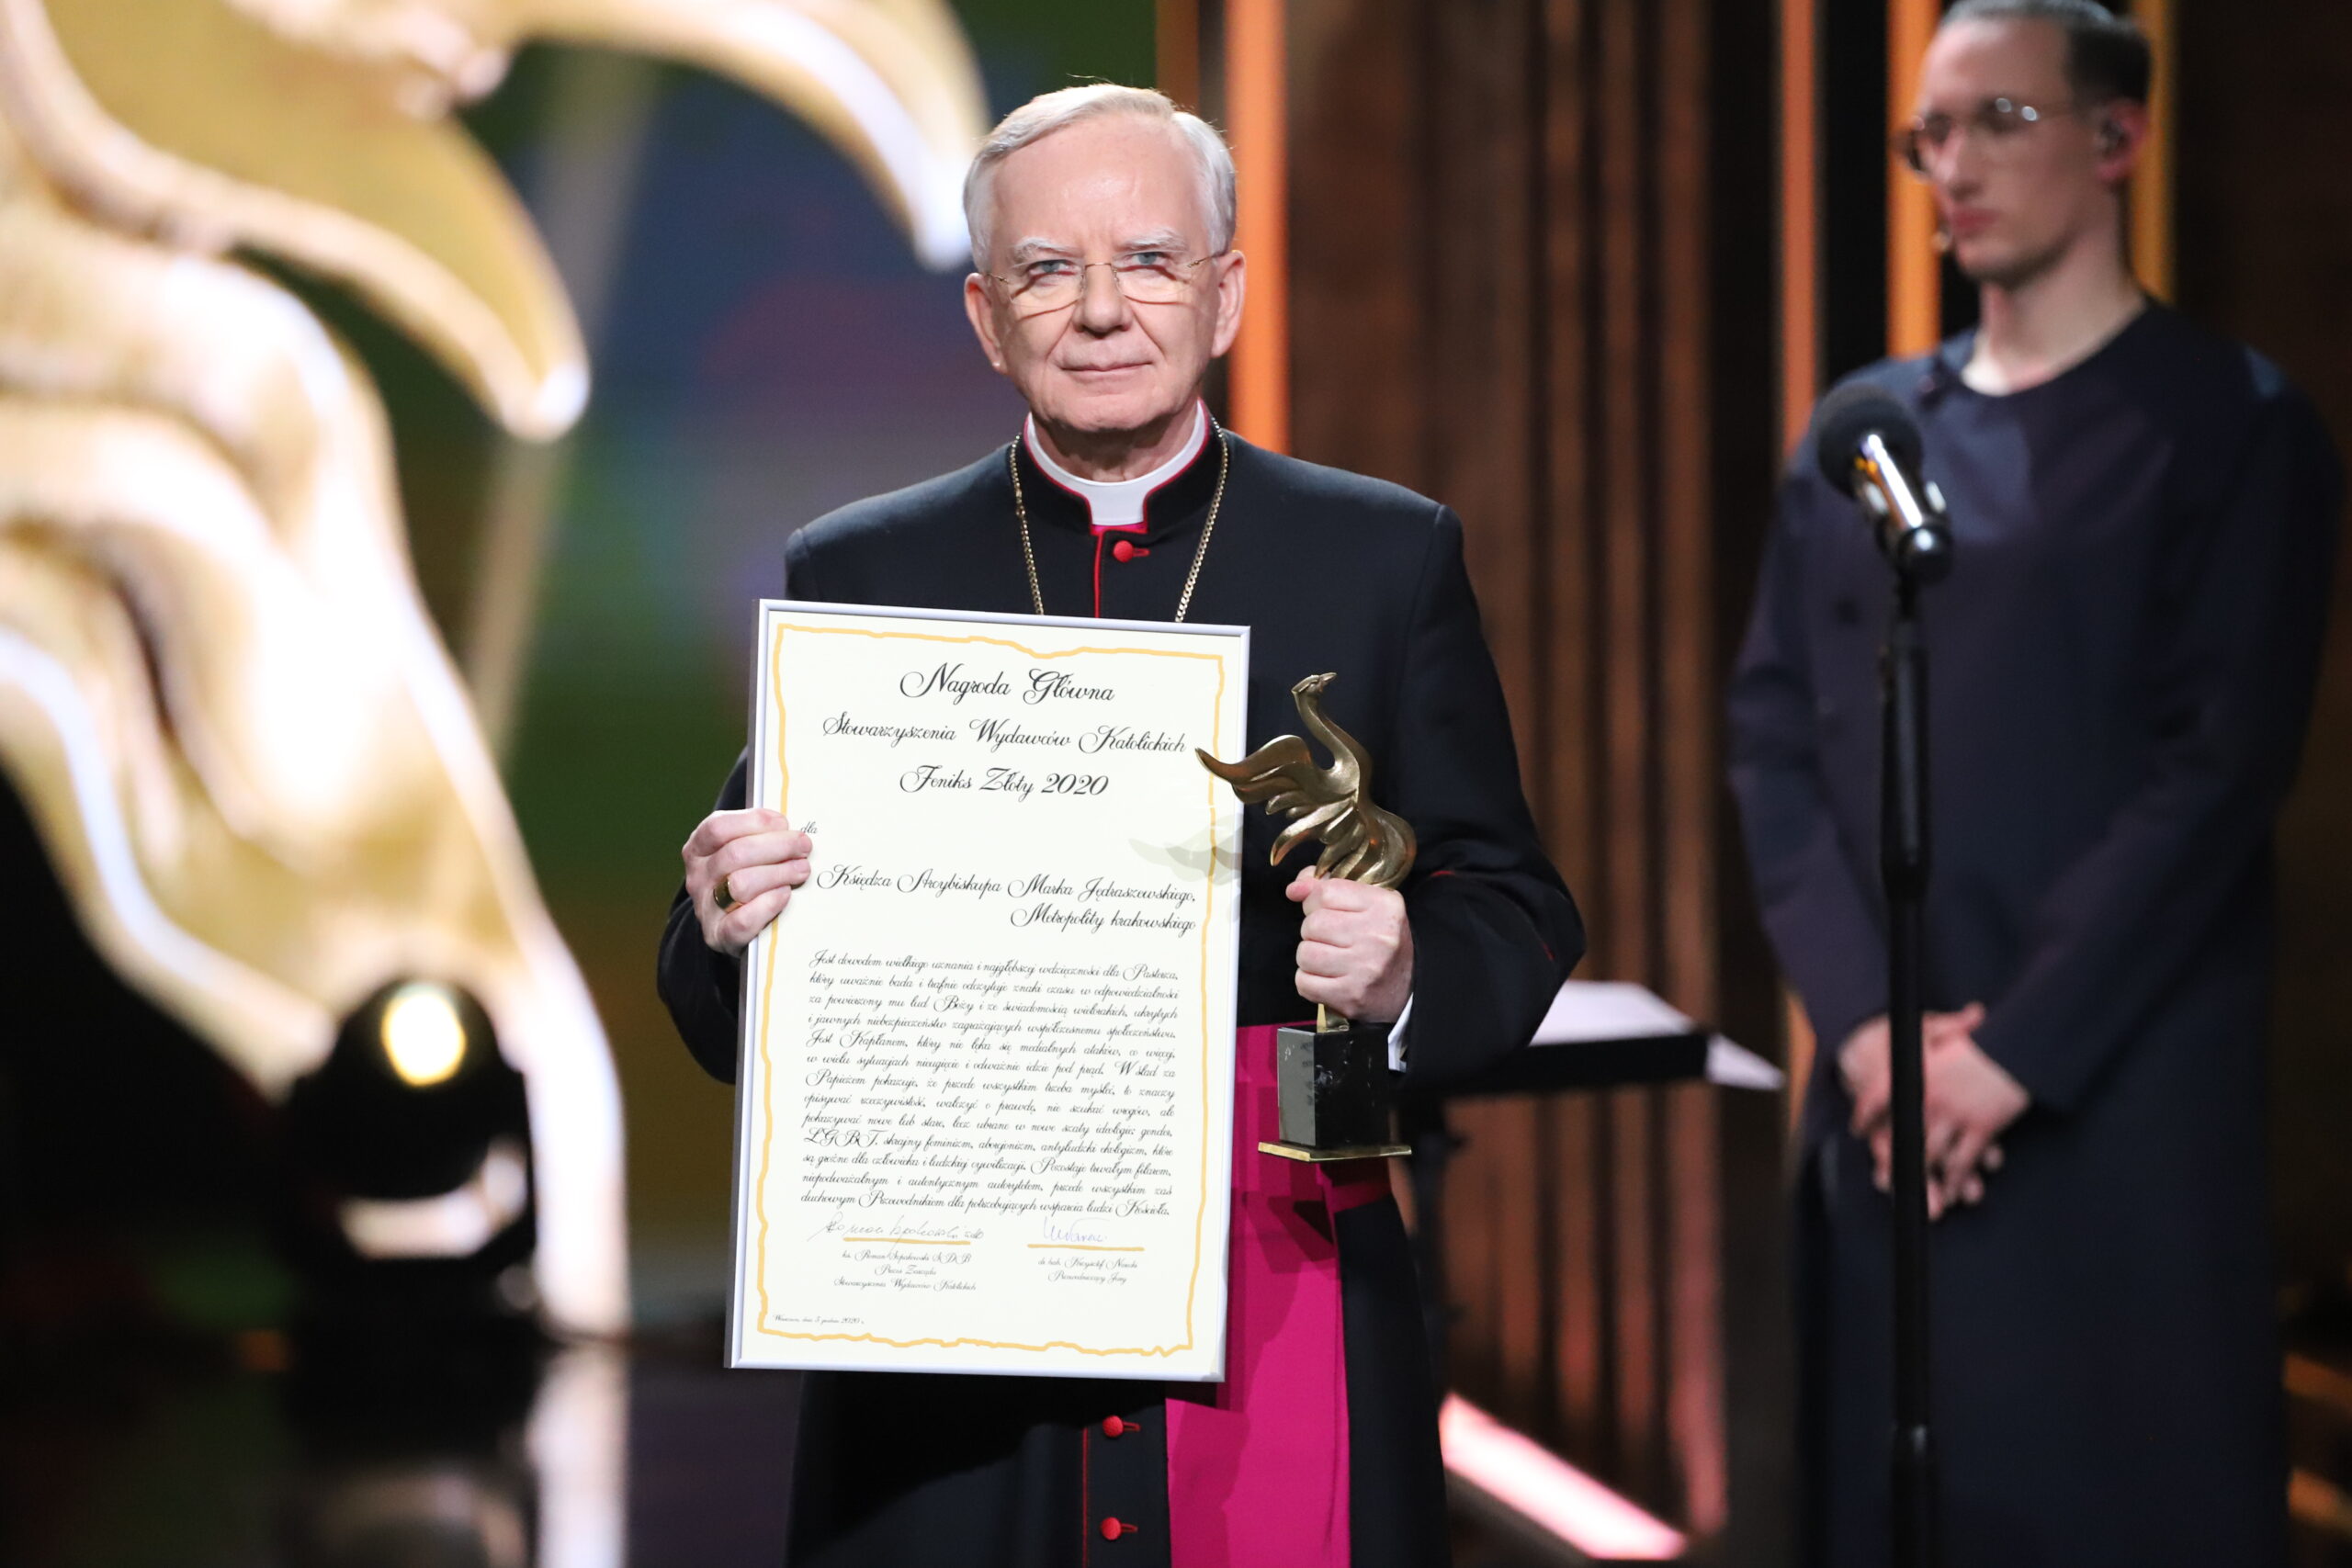 Arcybiskup Marek Jędraszewski nagrodzony. Za krytykę gender, LGBT, skrajnego feminizmu, aborcjonizmu i antyludzkiego ekologizmu